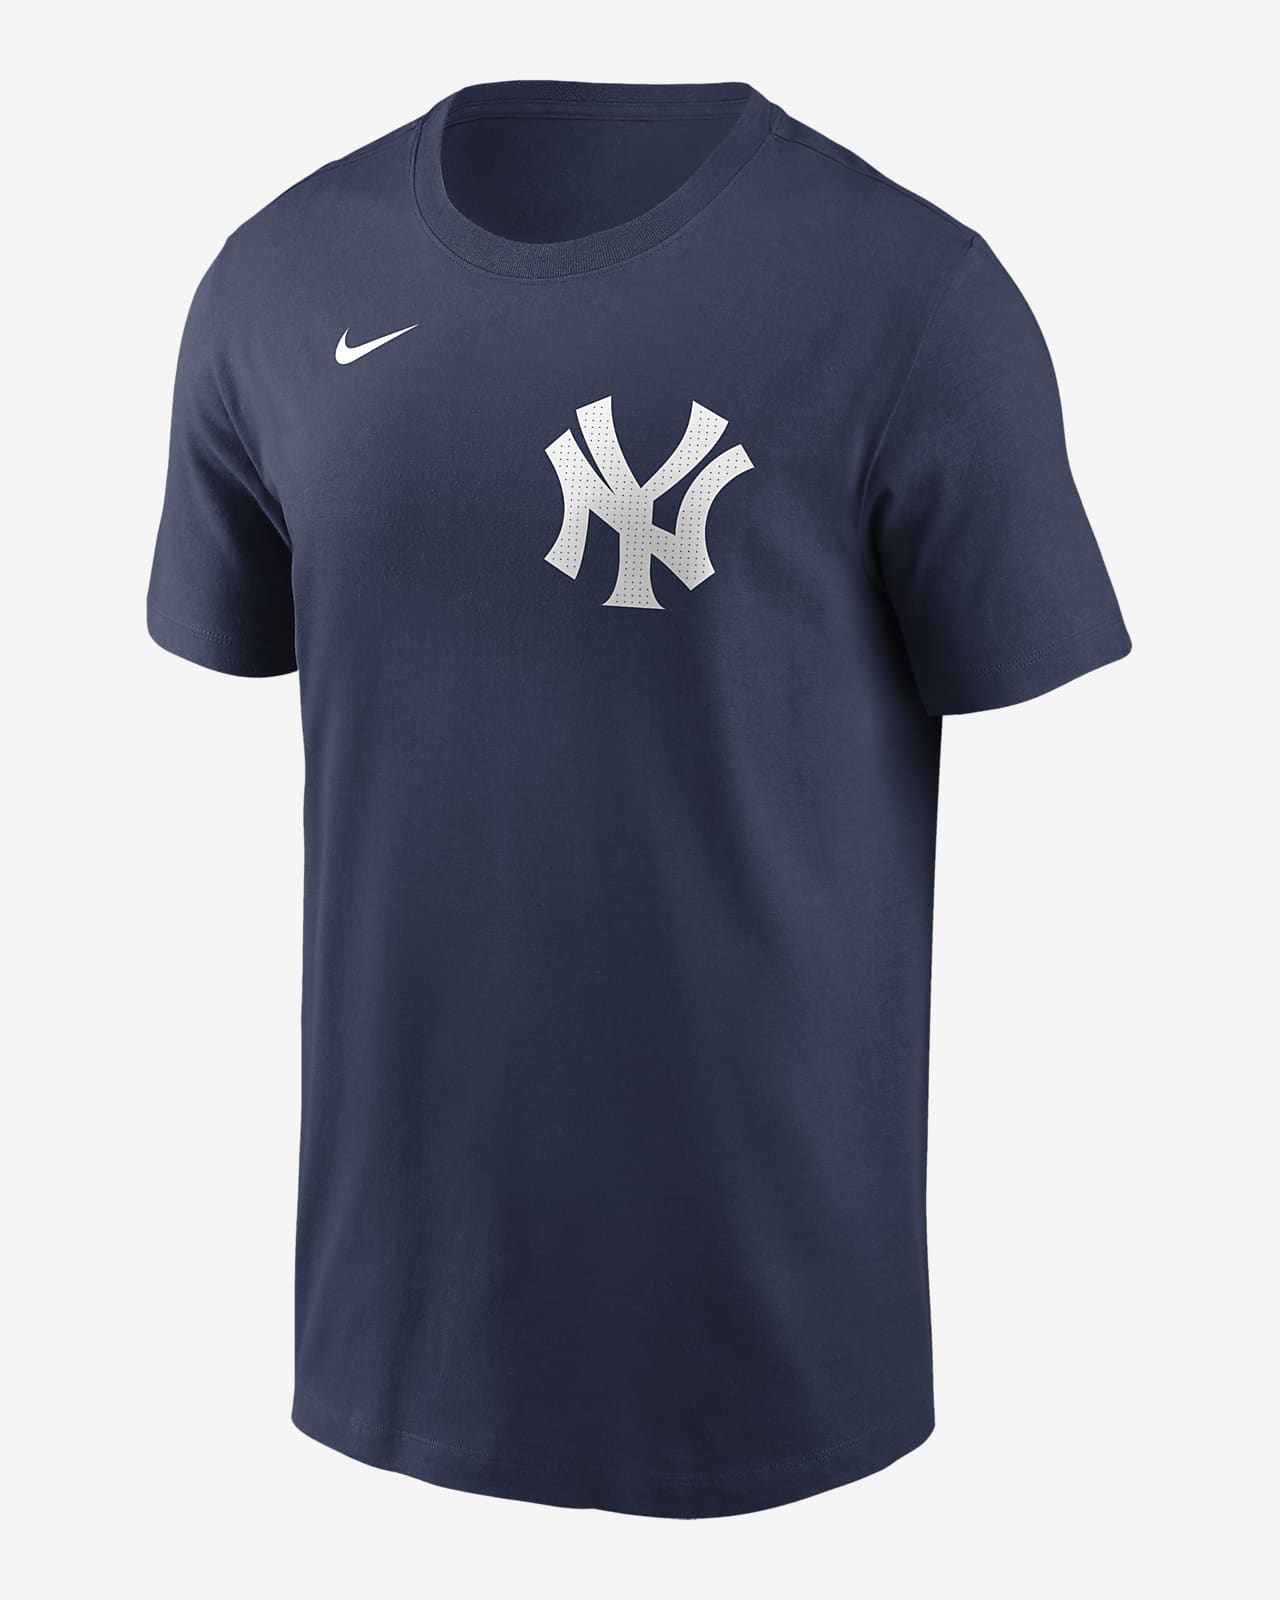 Playera Nike de la MLB para hombre Gerrit Cole New York Yankees Fuse